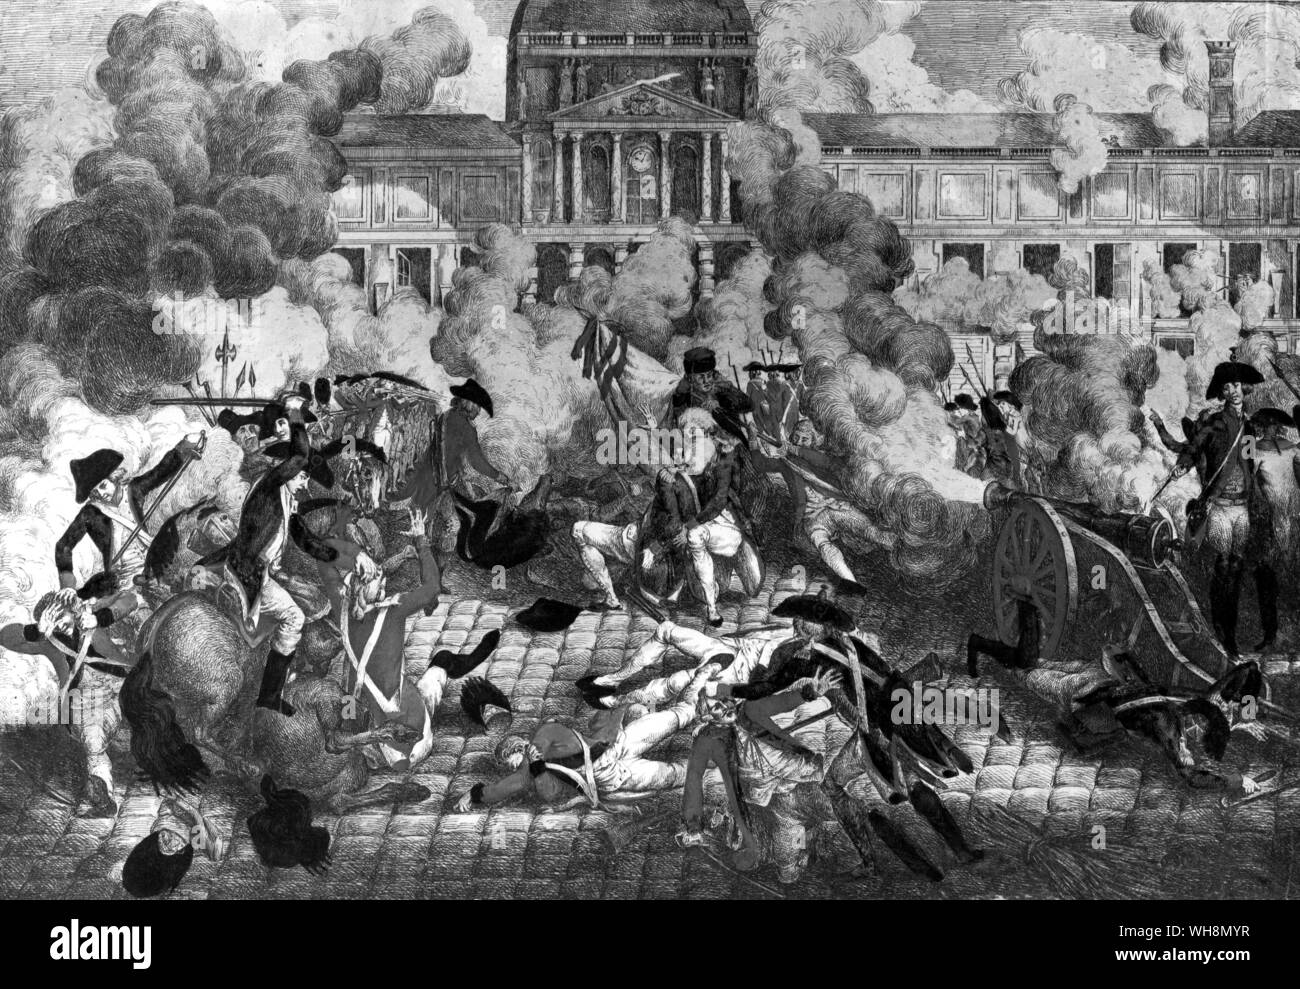 Den Angriff auf die Tuilerien durch die Pariser Mob am 10. August 1792, durch ein Massaker von Adligen und Schweizergardisten gefolgt. Bonaparte angewidert Augenzeuge, schreiben: "Wenn Louis XVI sein Pferd montiert hatte, der Sieg wäre gewesen sein..." Musee Carvavalet, Paris, Foto: Lauros-Giraudon Stockfoto